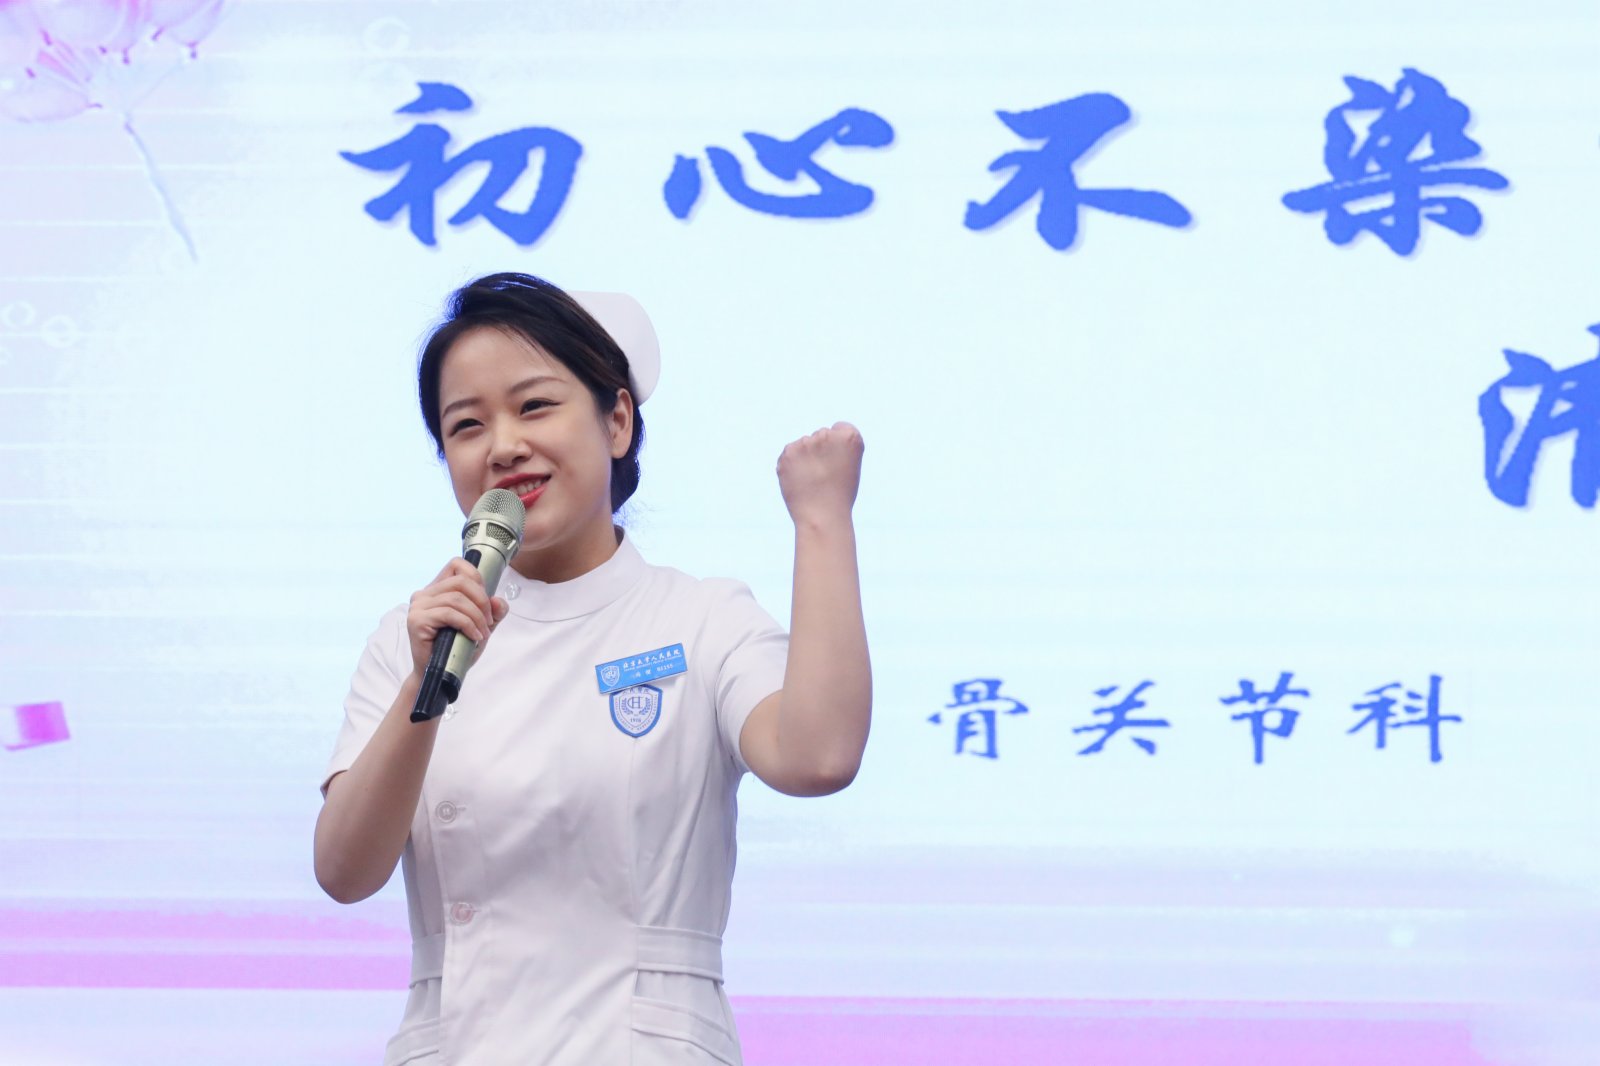 北京大學人民醫院的一名護士代表在慶祝活動上演講。